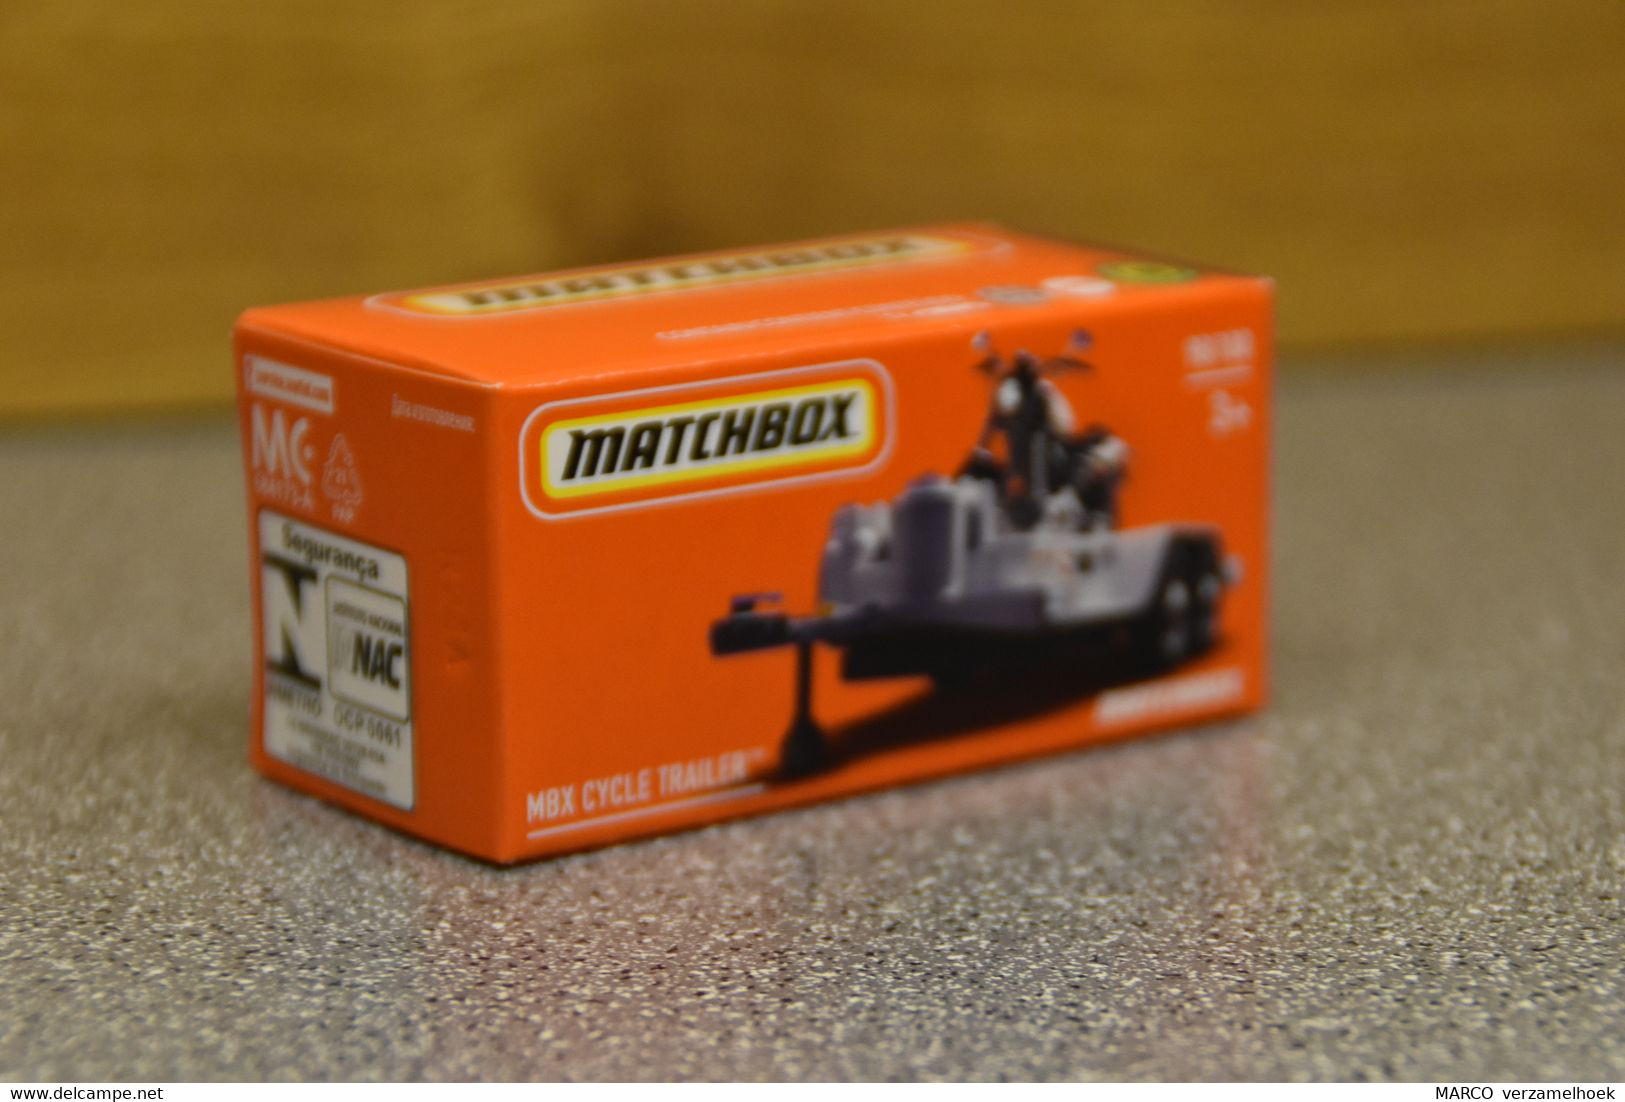 Mattel - Matchbox 98/100 MBX Cycle Trailer - Matchbox (Mattel)